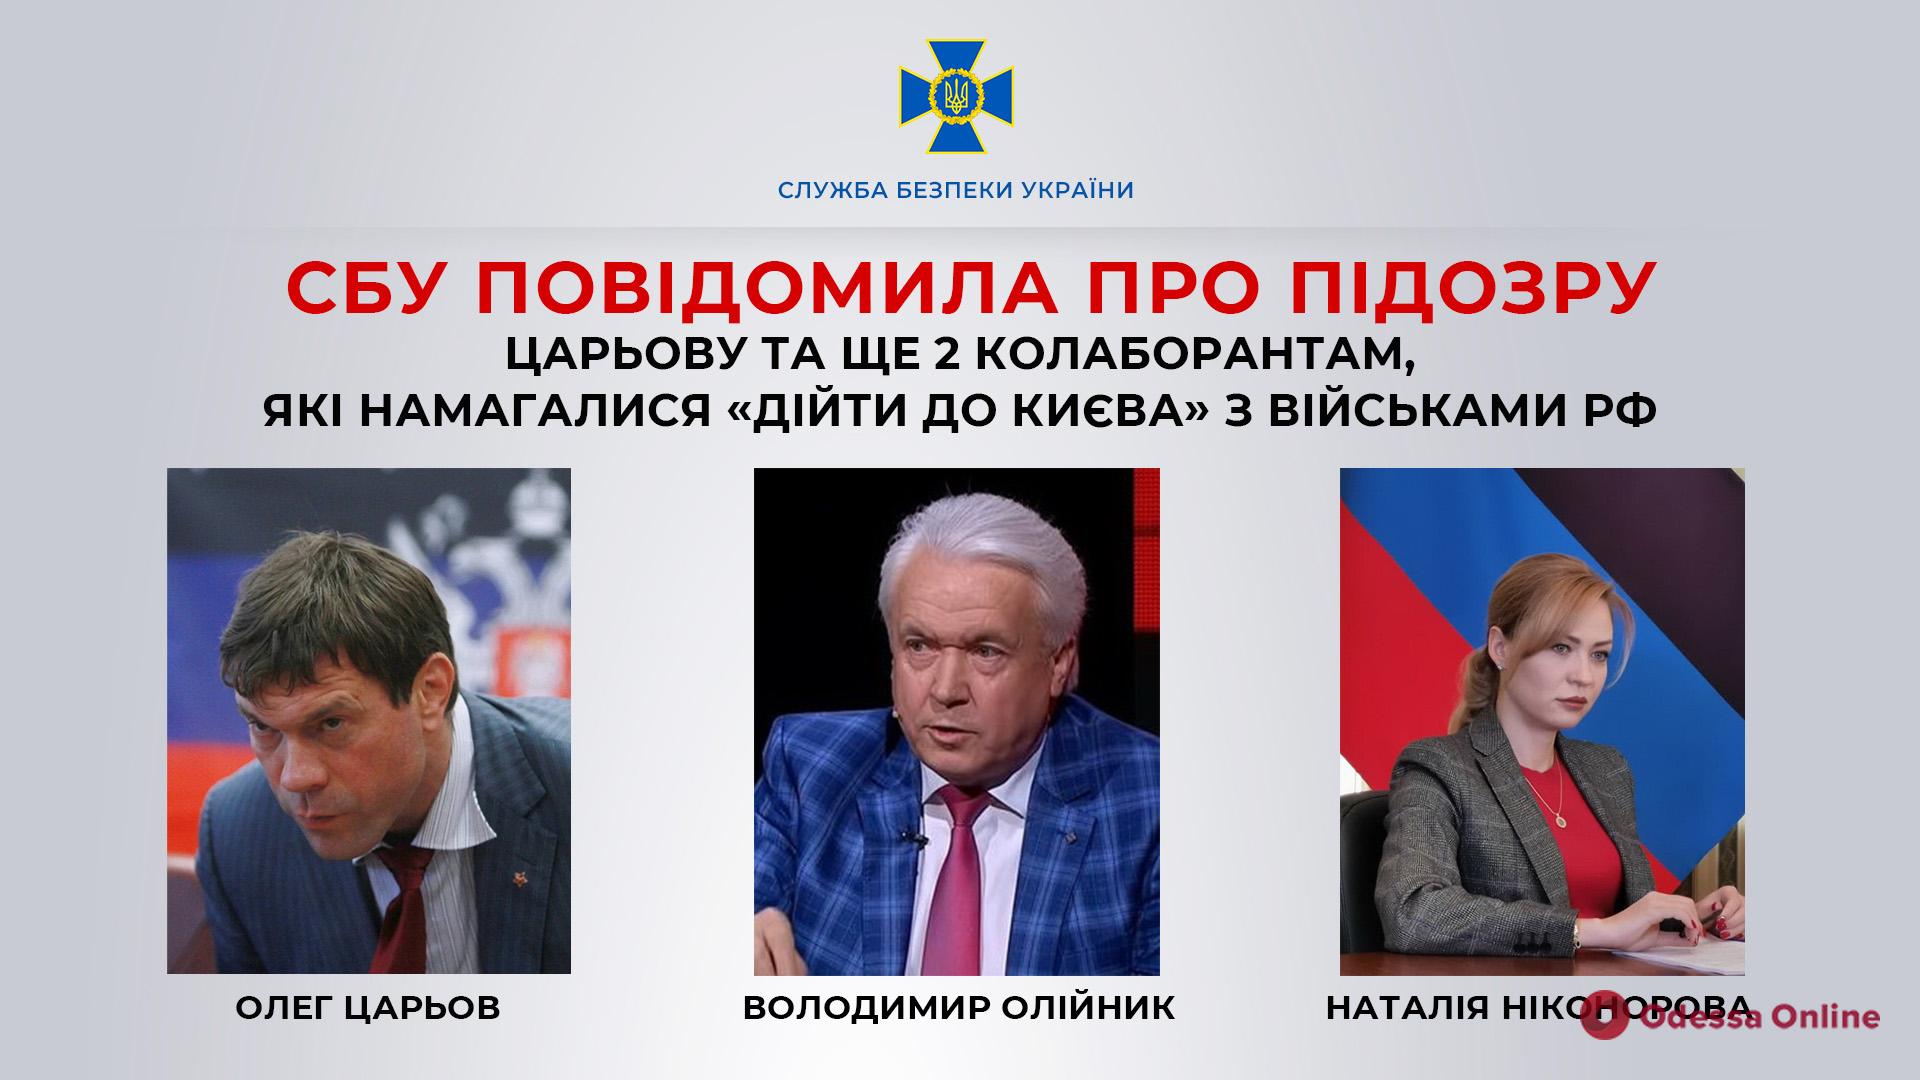 СБУ повідомила про підозру Царьову та ще двом колаборантам, які намагалися «дійти до Києва» з військами рф